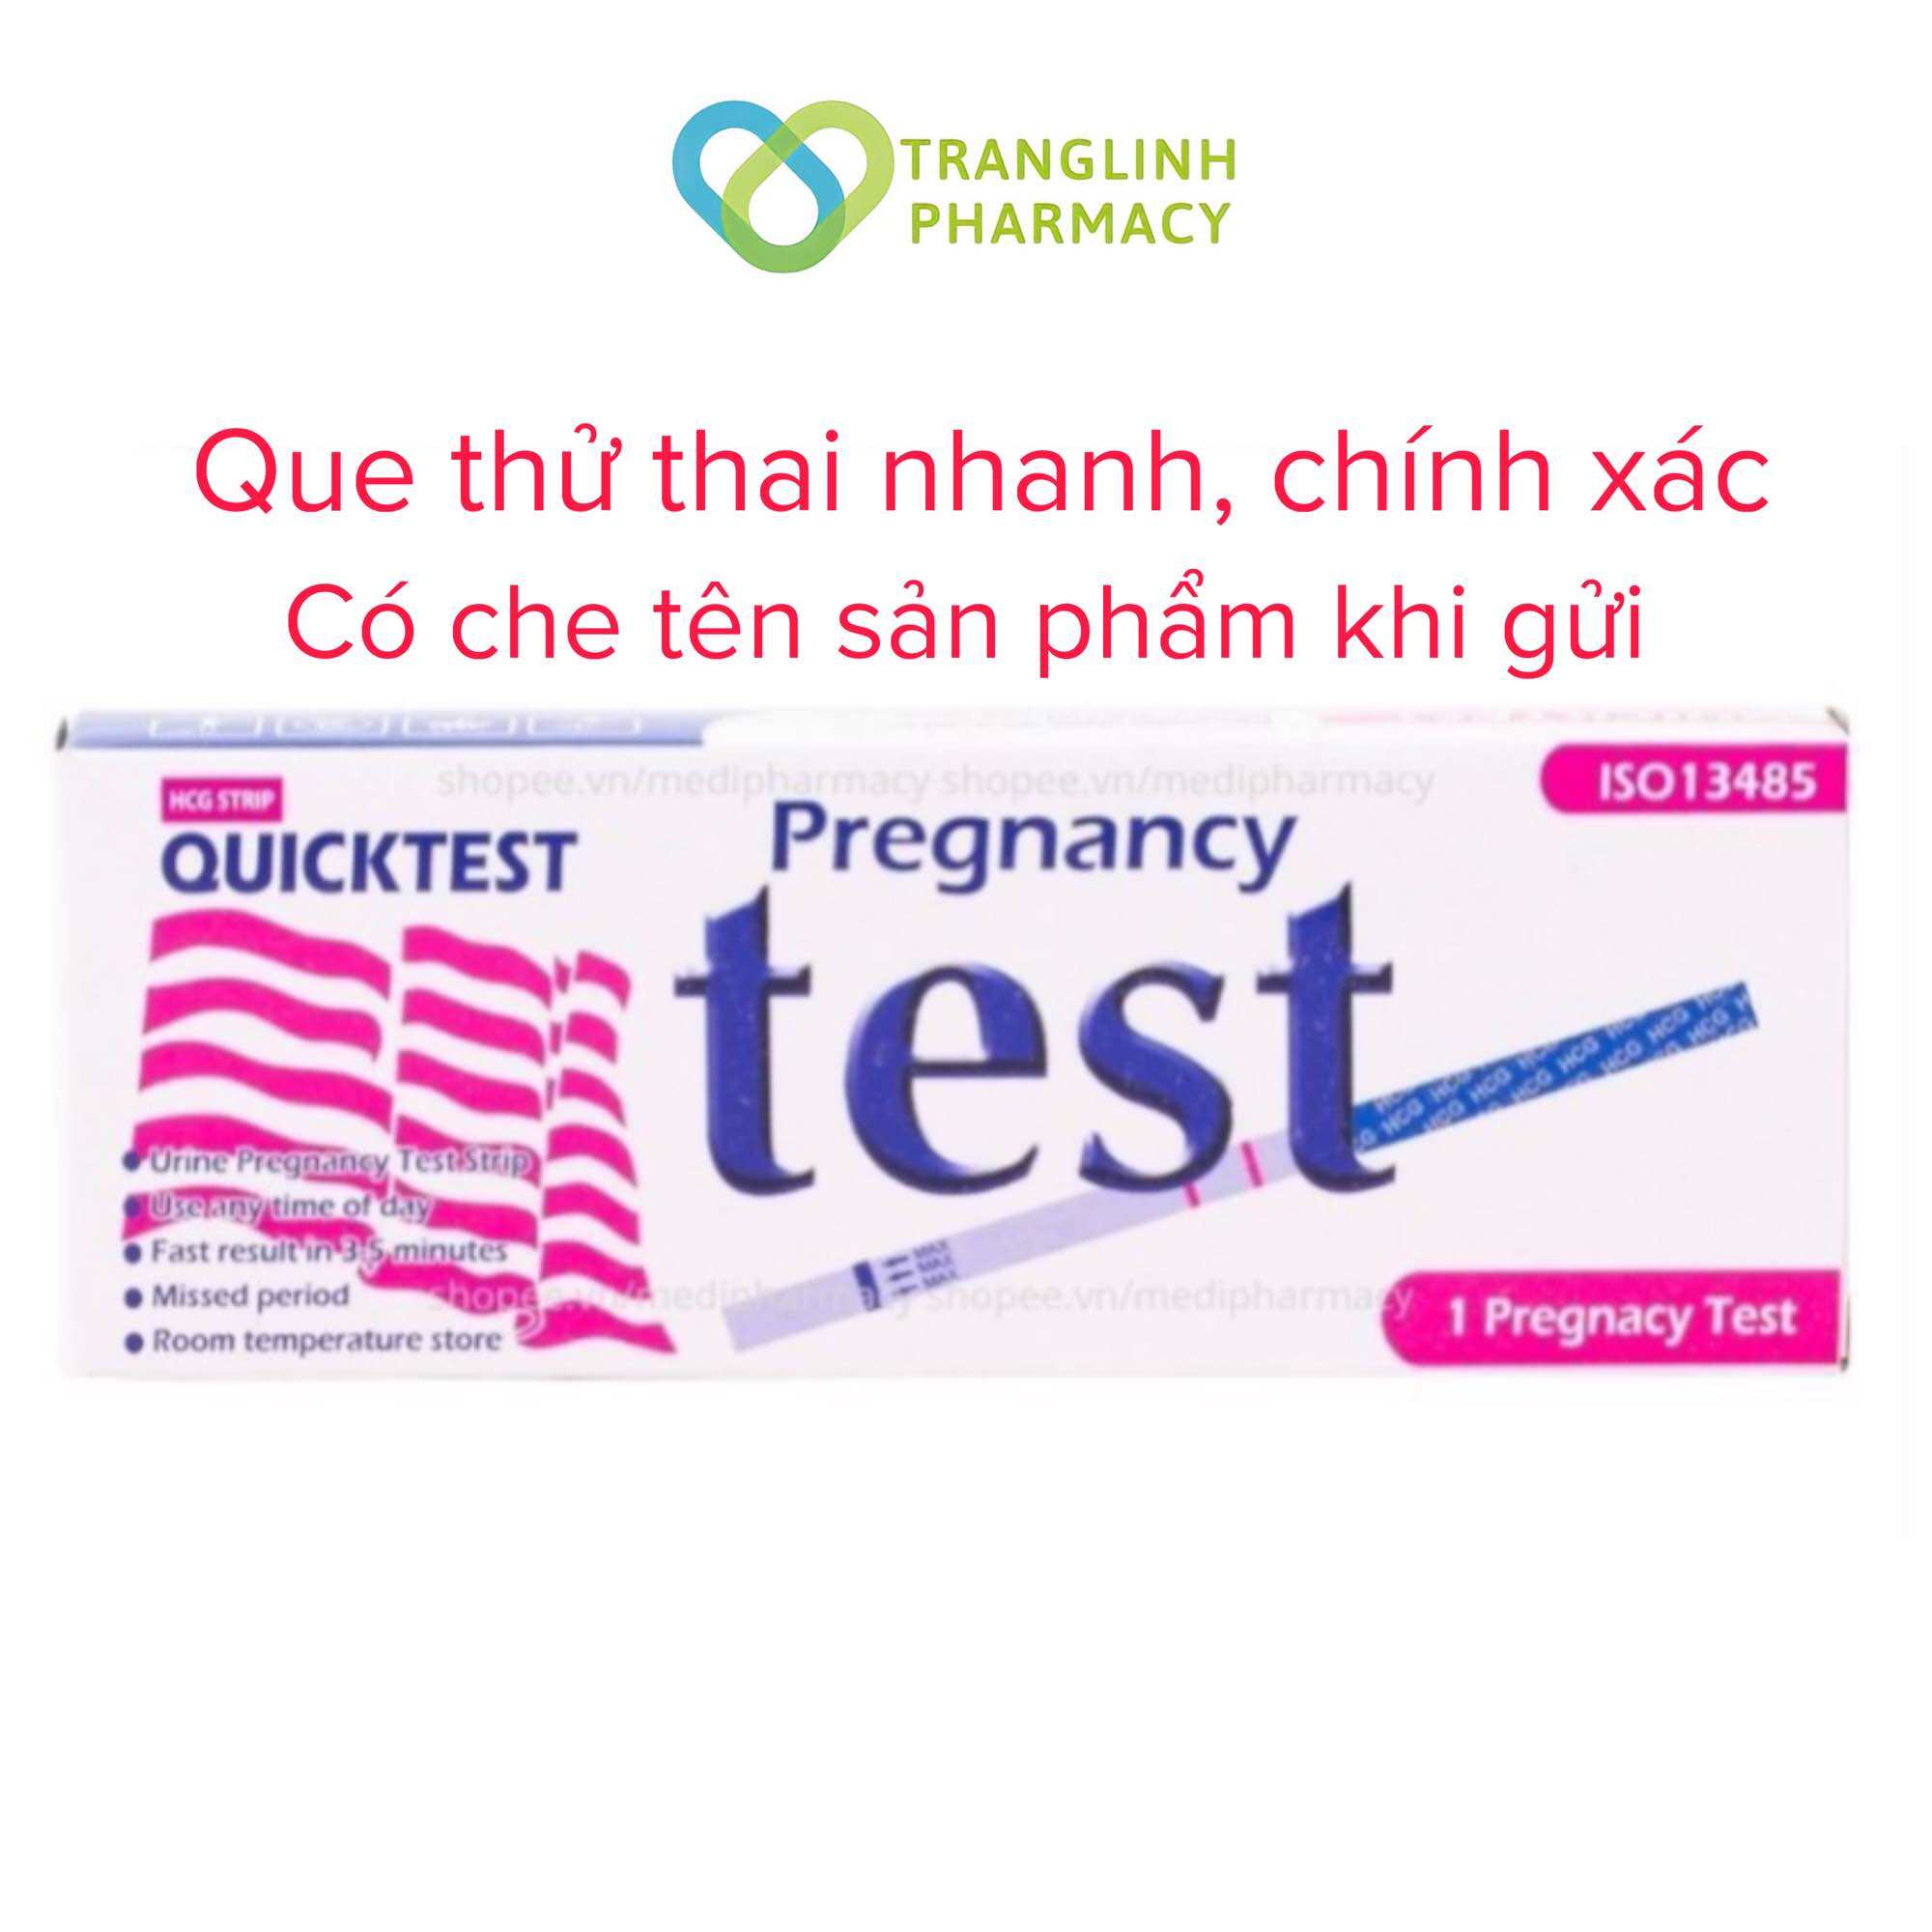 Que thử thai Quicktest - test thử thai nhanh